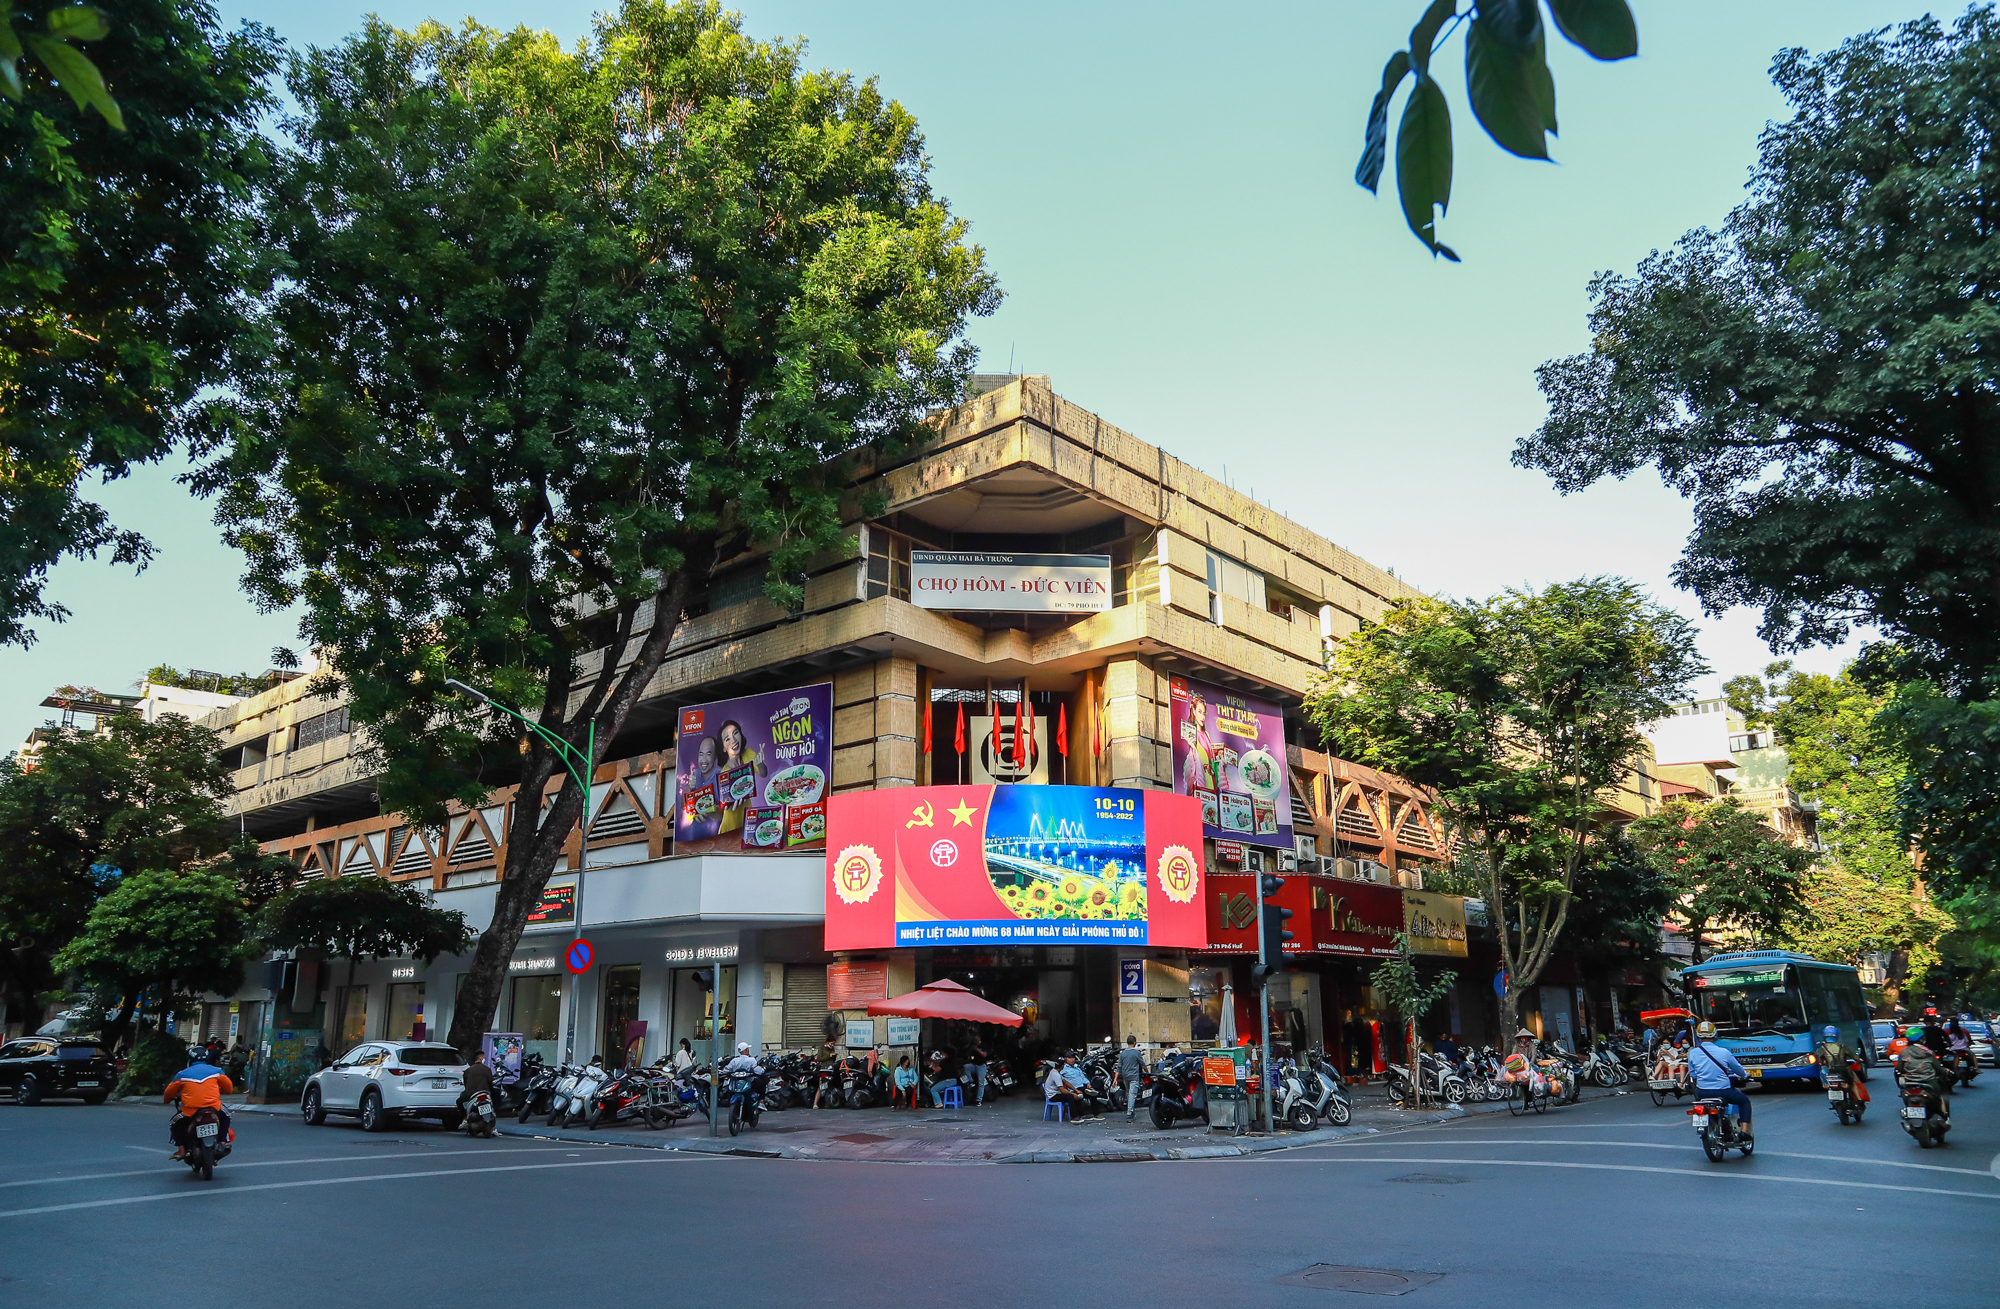 Quận thu ngân sách cao nhất ở Hà Nội, cao hơn 7 tỉnh cộng lại - Ảnh 6.